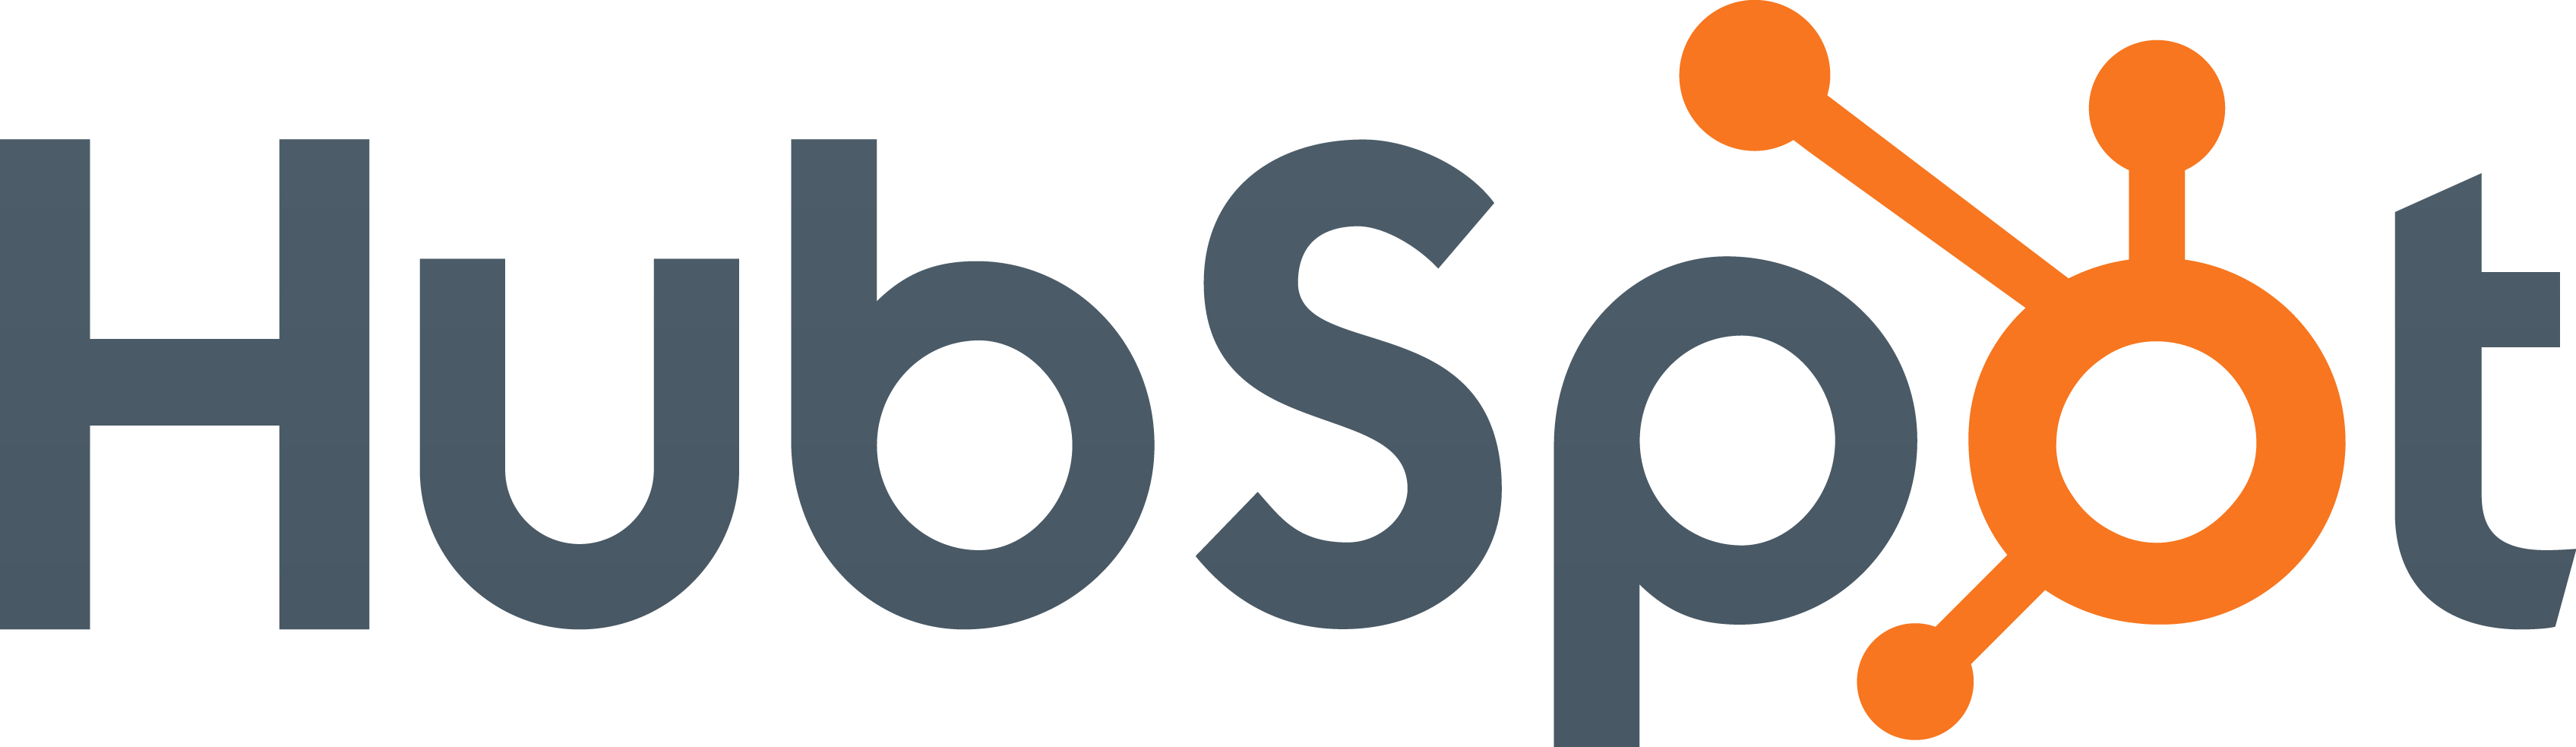 HubSpot_logo-14-1.png